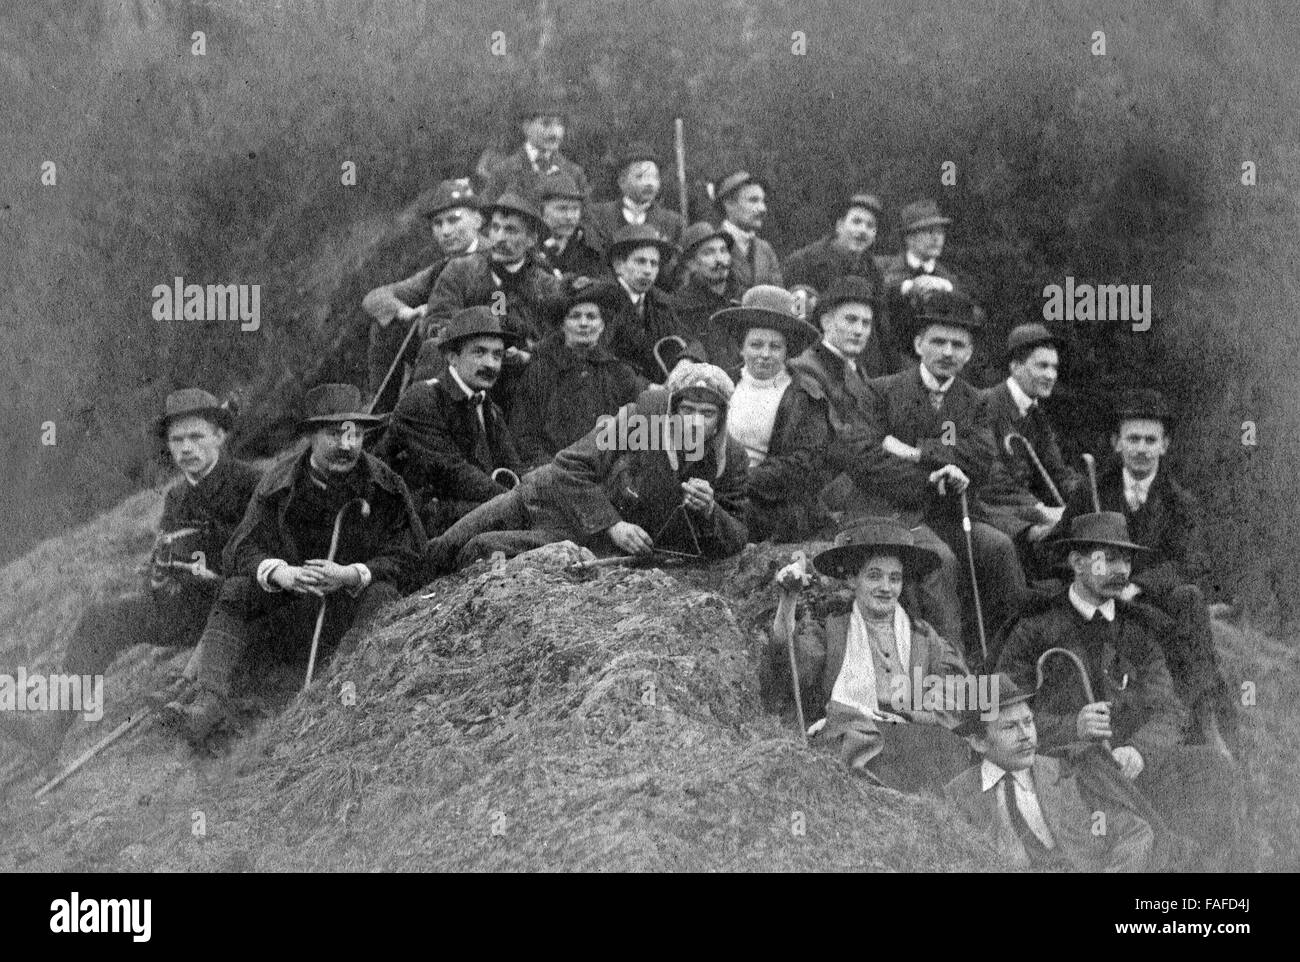 Gruppe der Naturfreunde Cöln bei einem Gruppenfoto auf einem Heuhaufen, Deutschland 1910er Jahre. Gruppo di Naturfreunde su un mucchio di fieno, Germania 1910s. Foto Stock